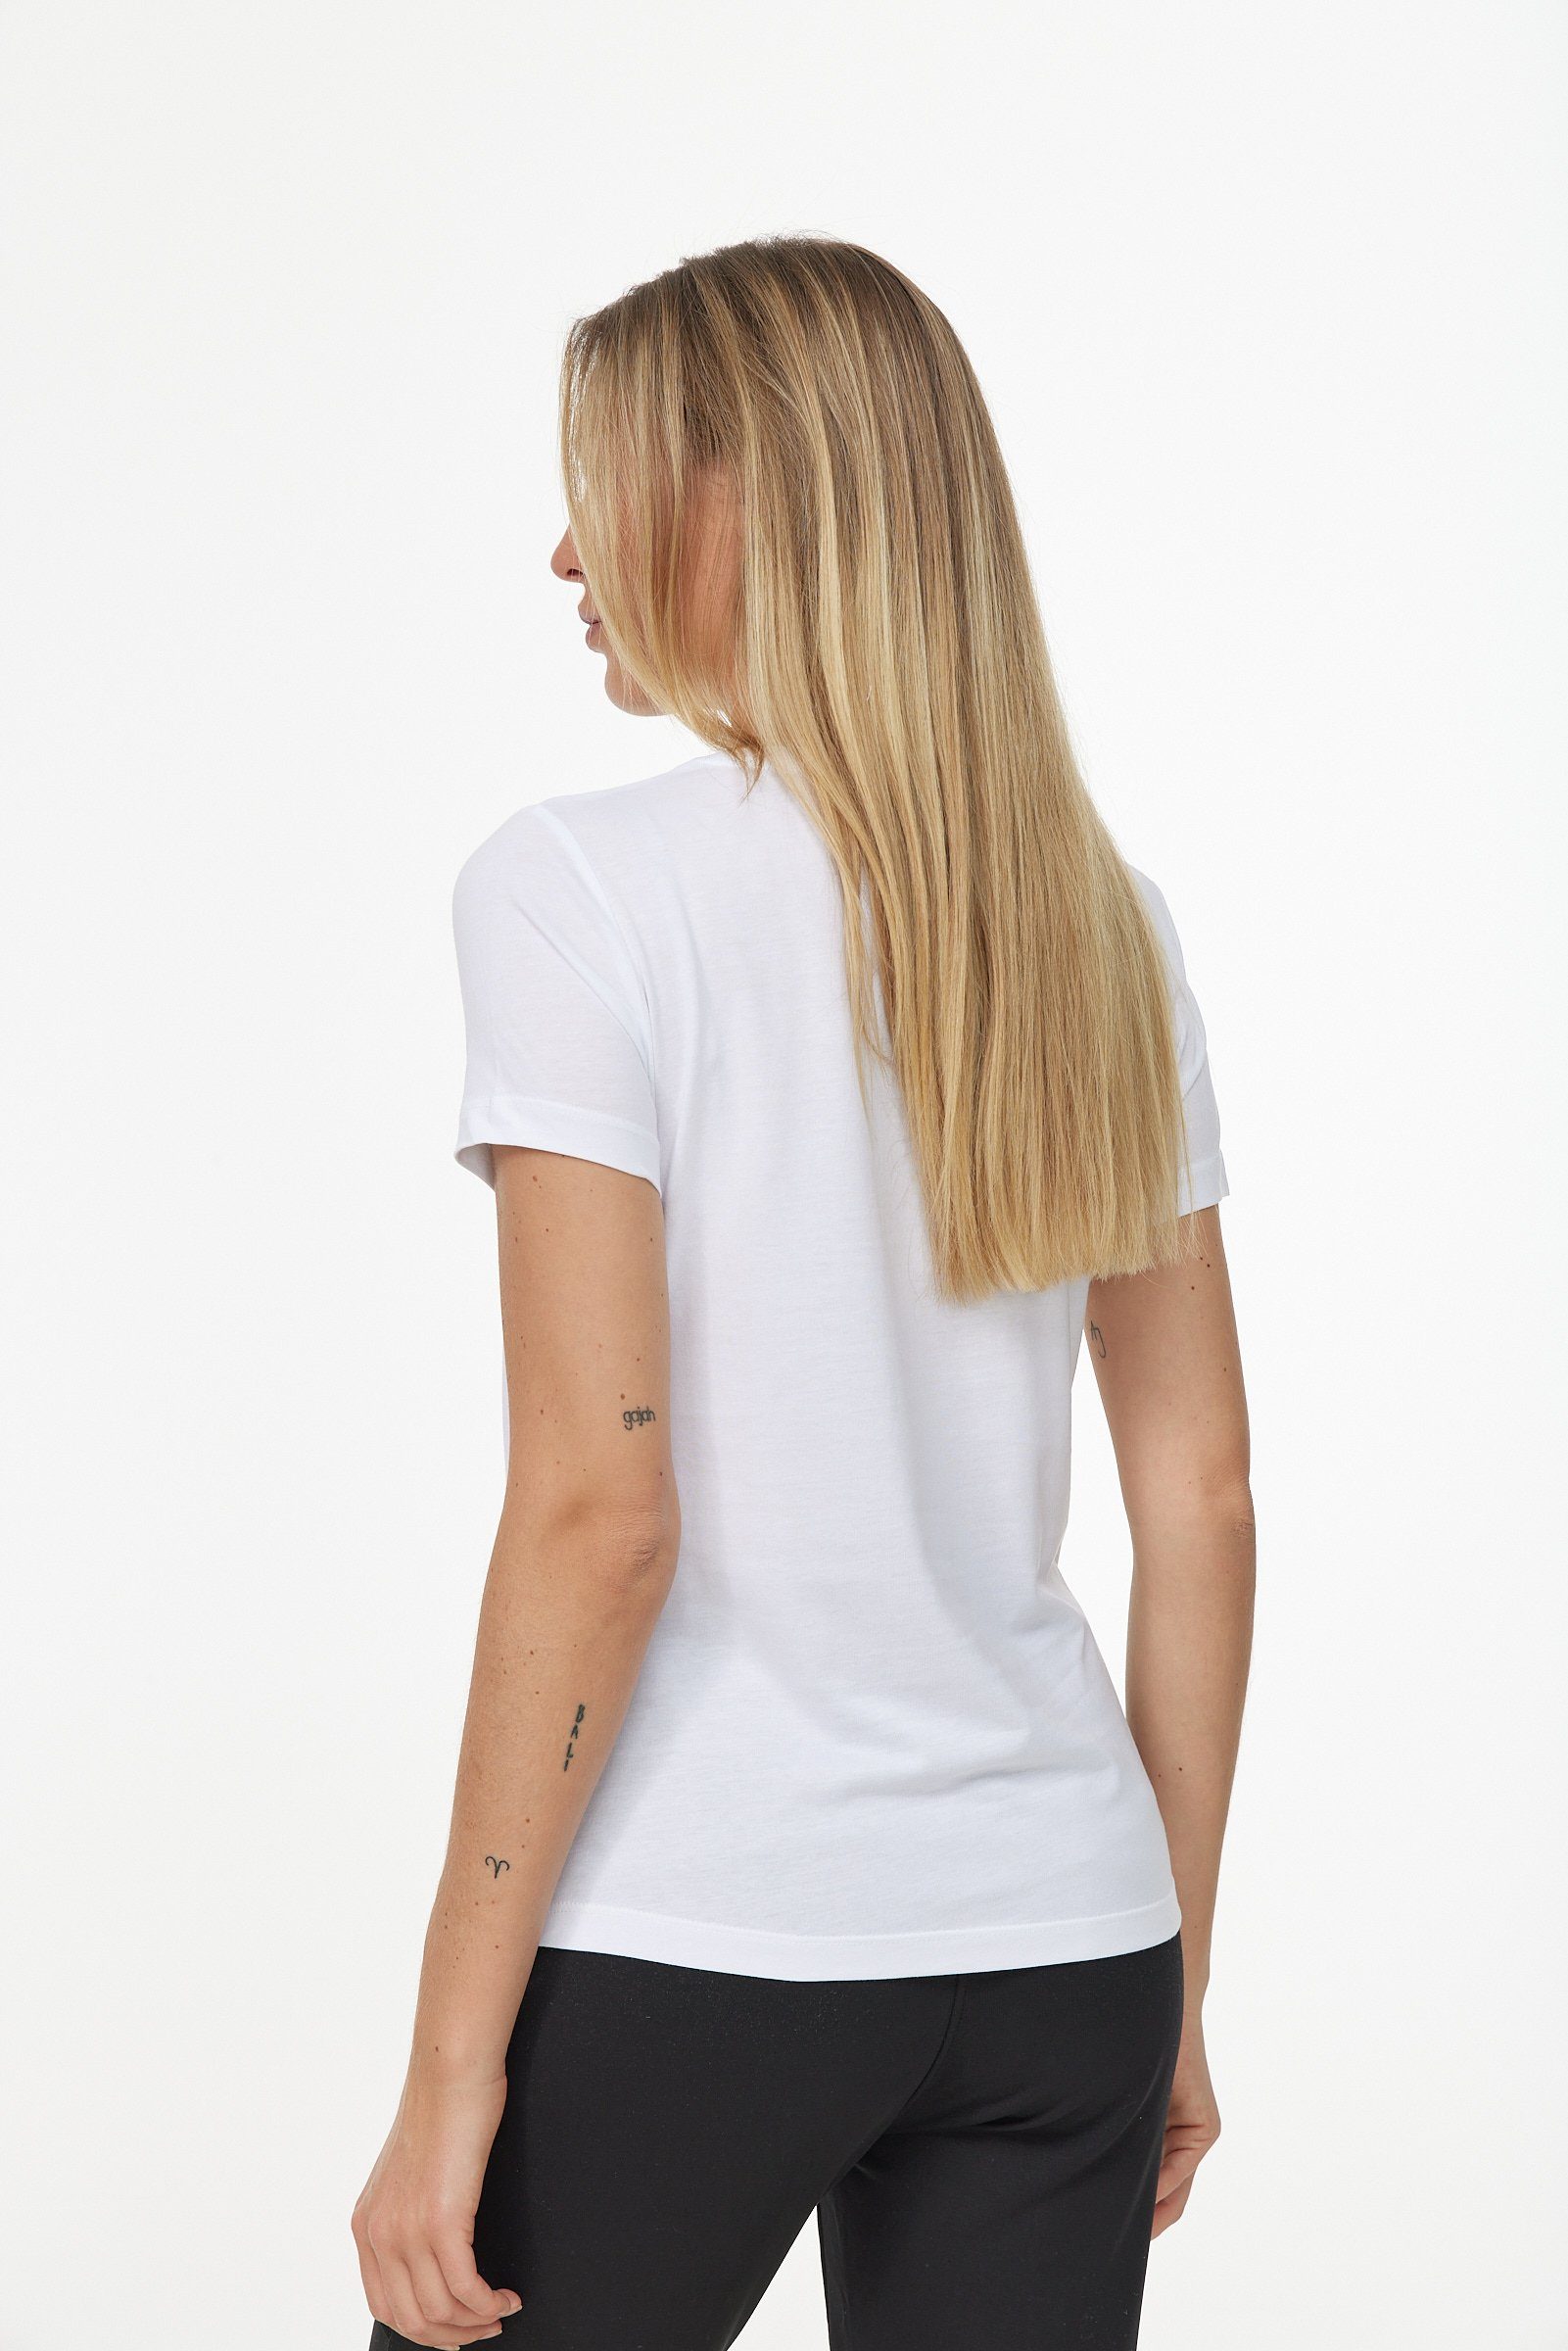 weiß-schwarz Decay in schlichtem T-Shirt Design